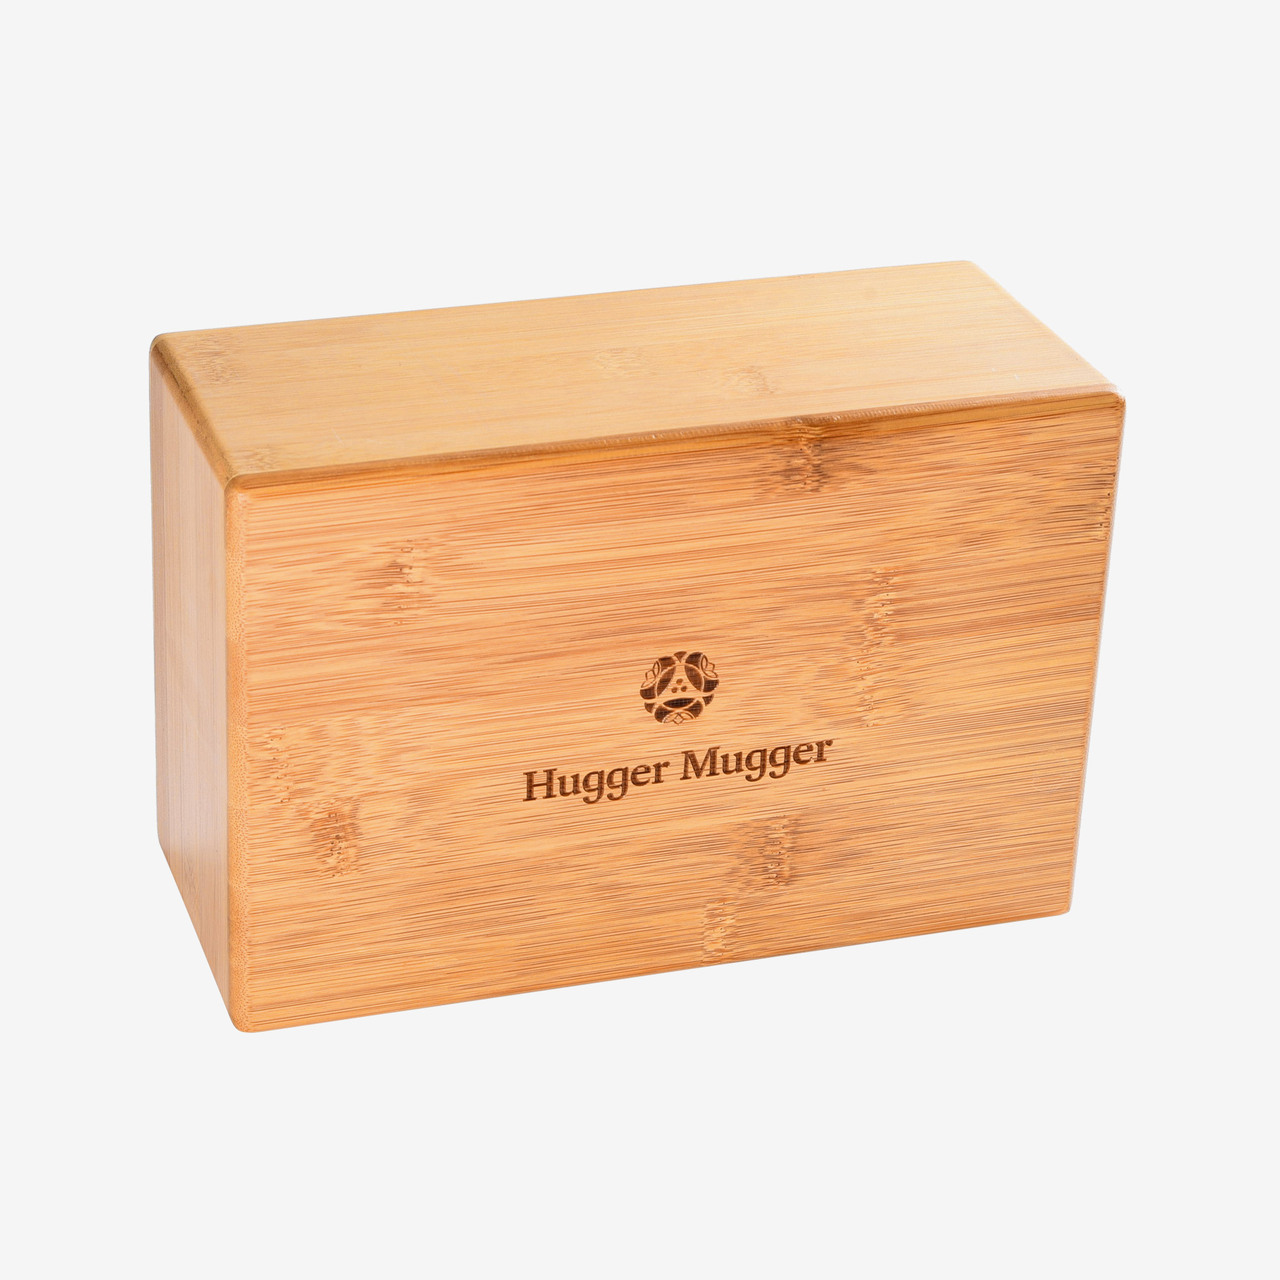 Bamboo Yoga Block - Hugger Mugger  Natural, Sustainable, Eco-Friendly